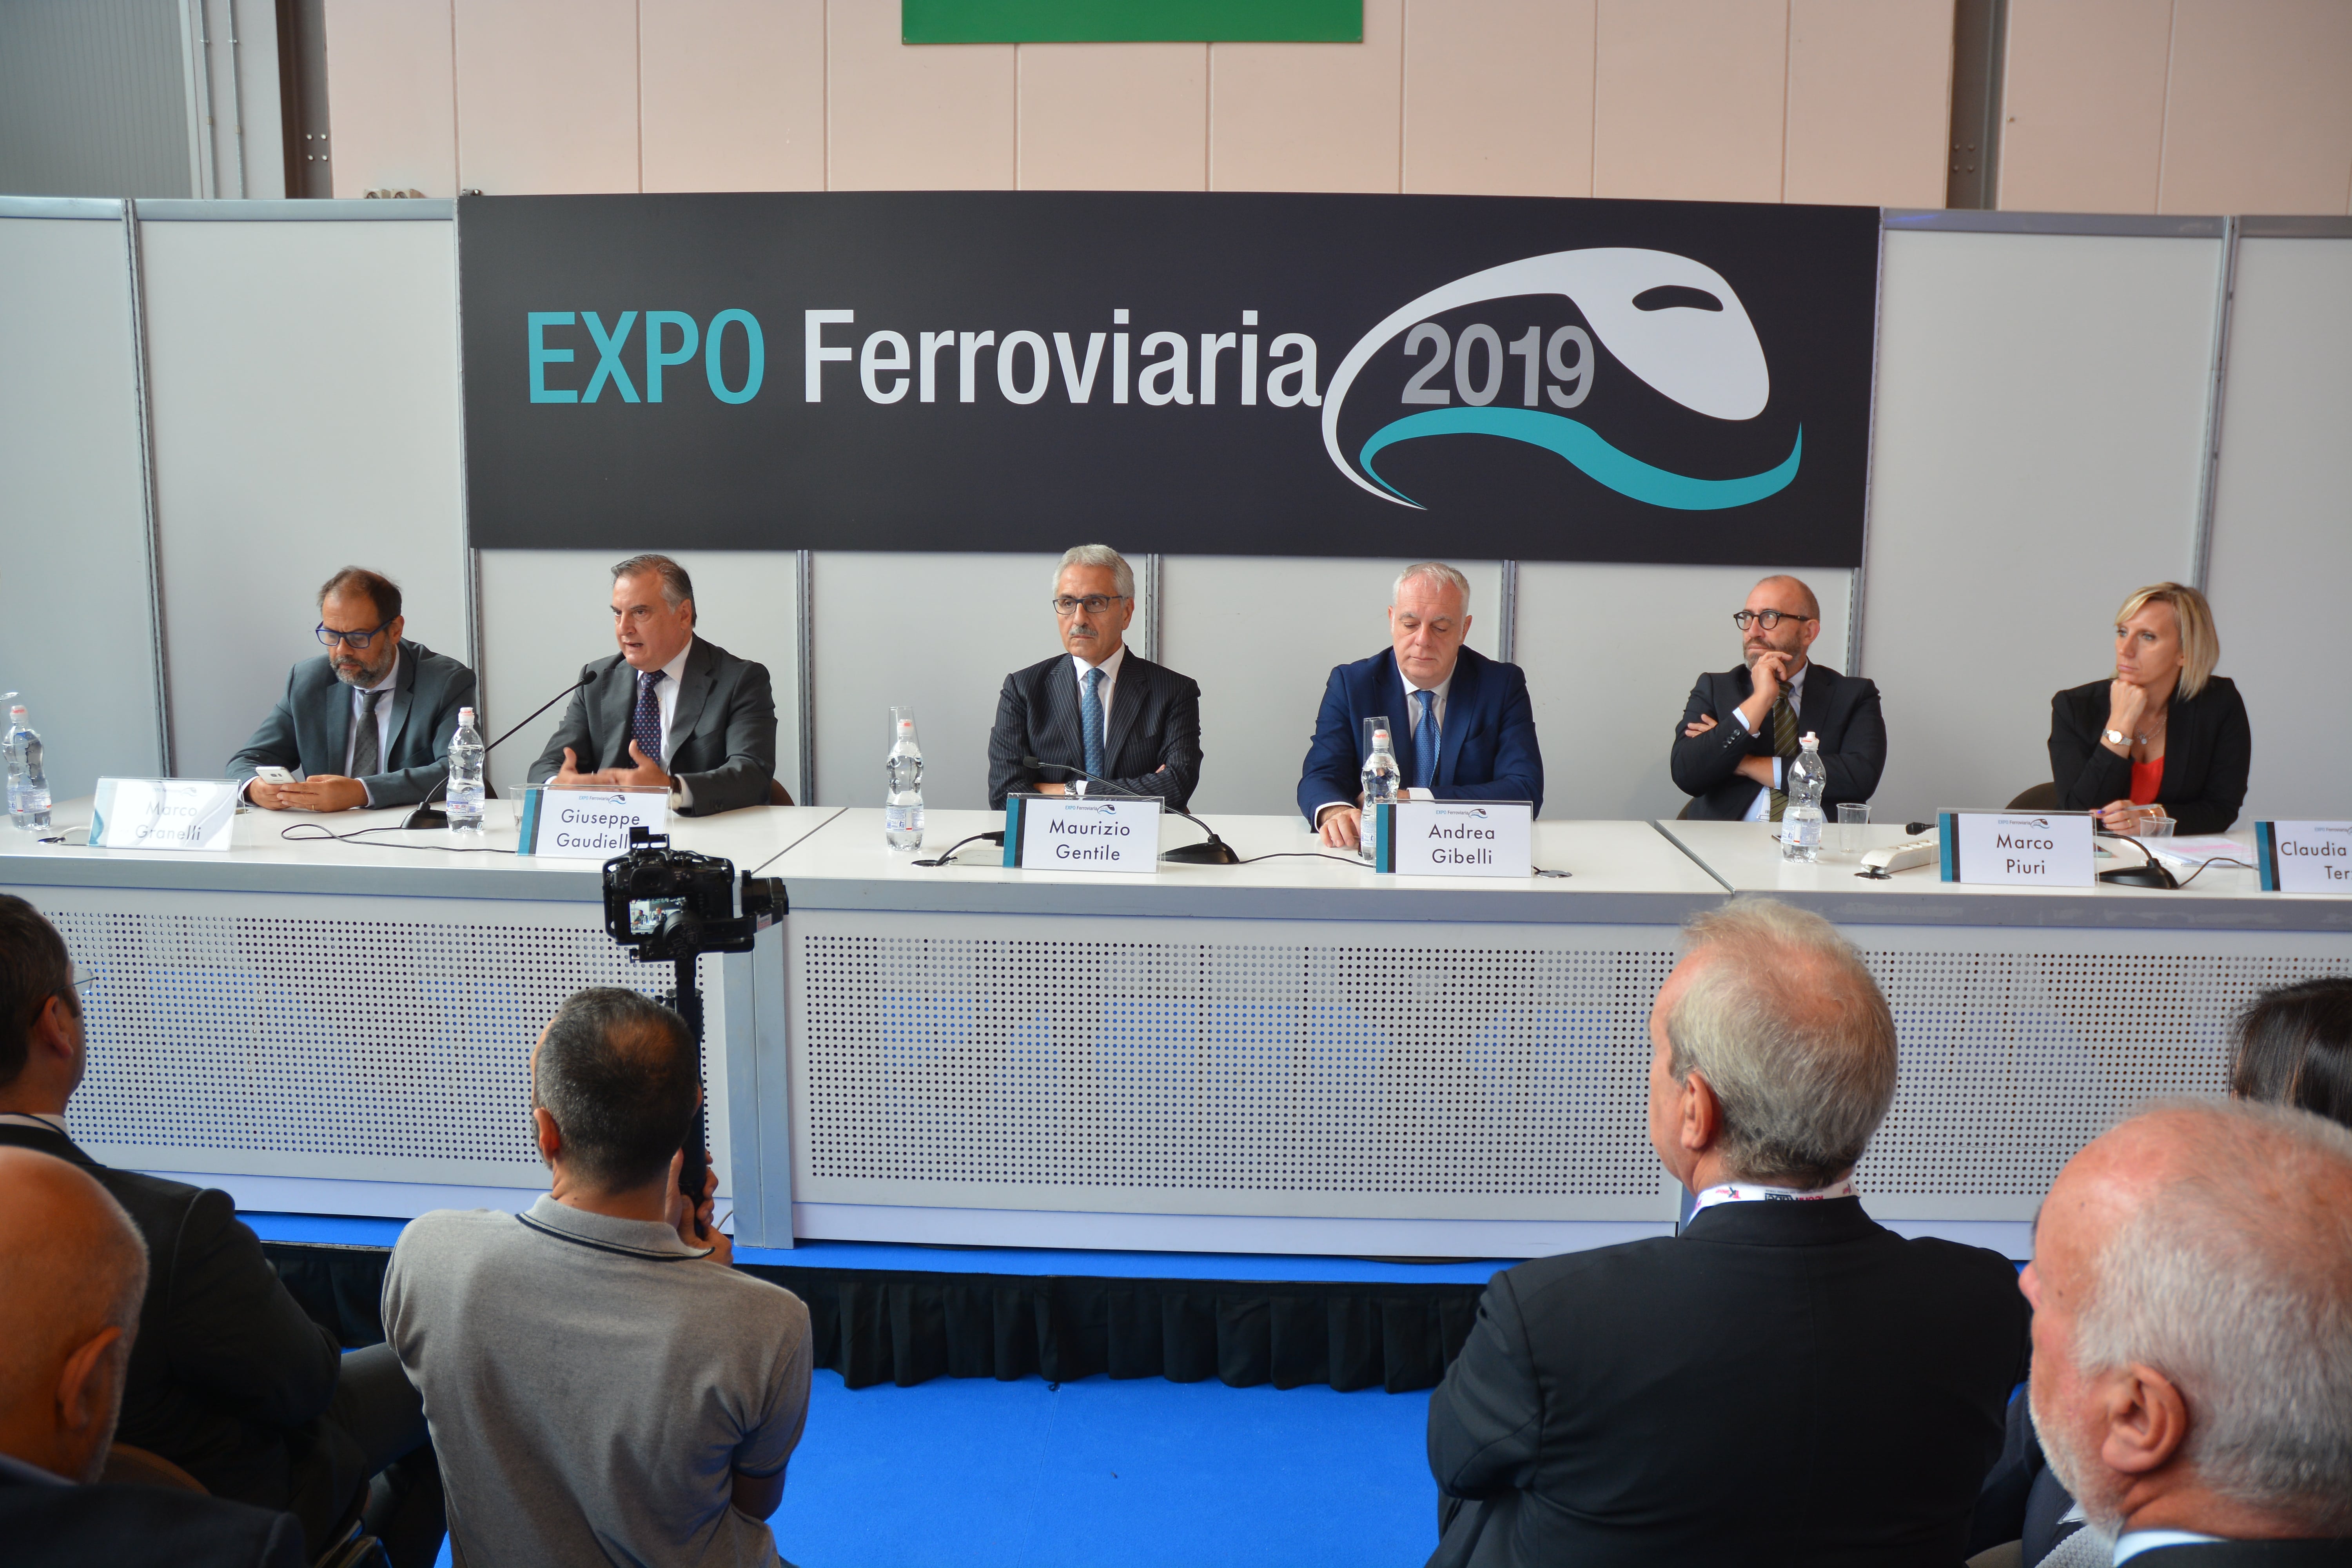 Expo Ferroviaria 2019